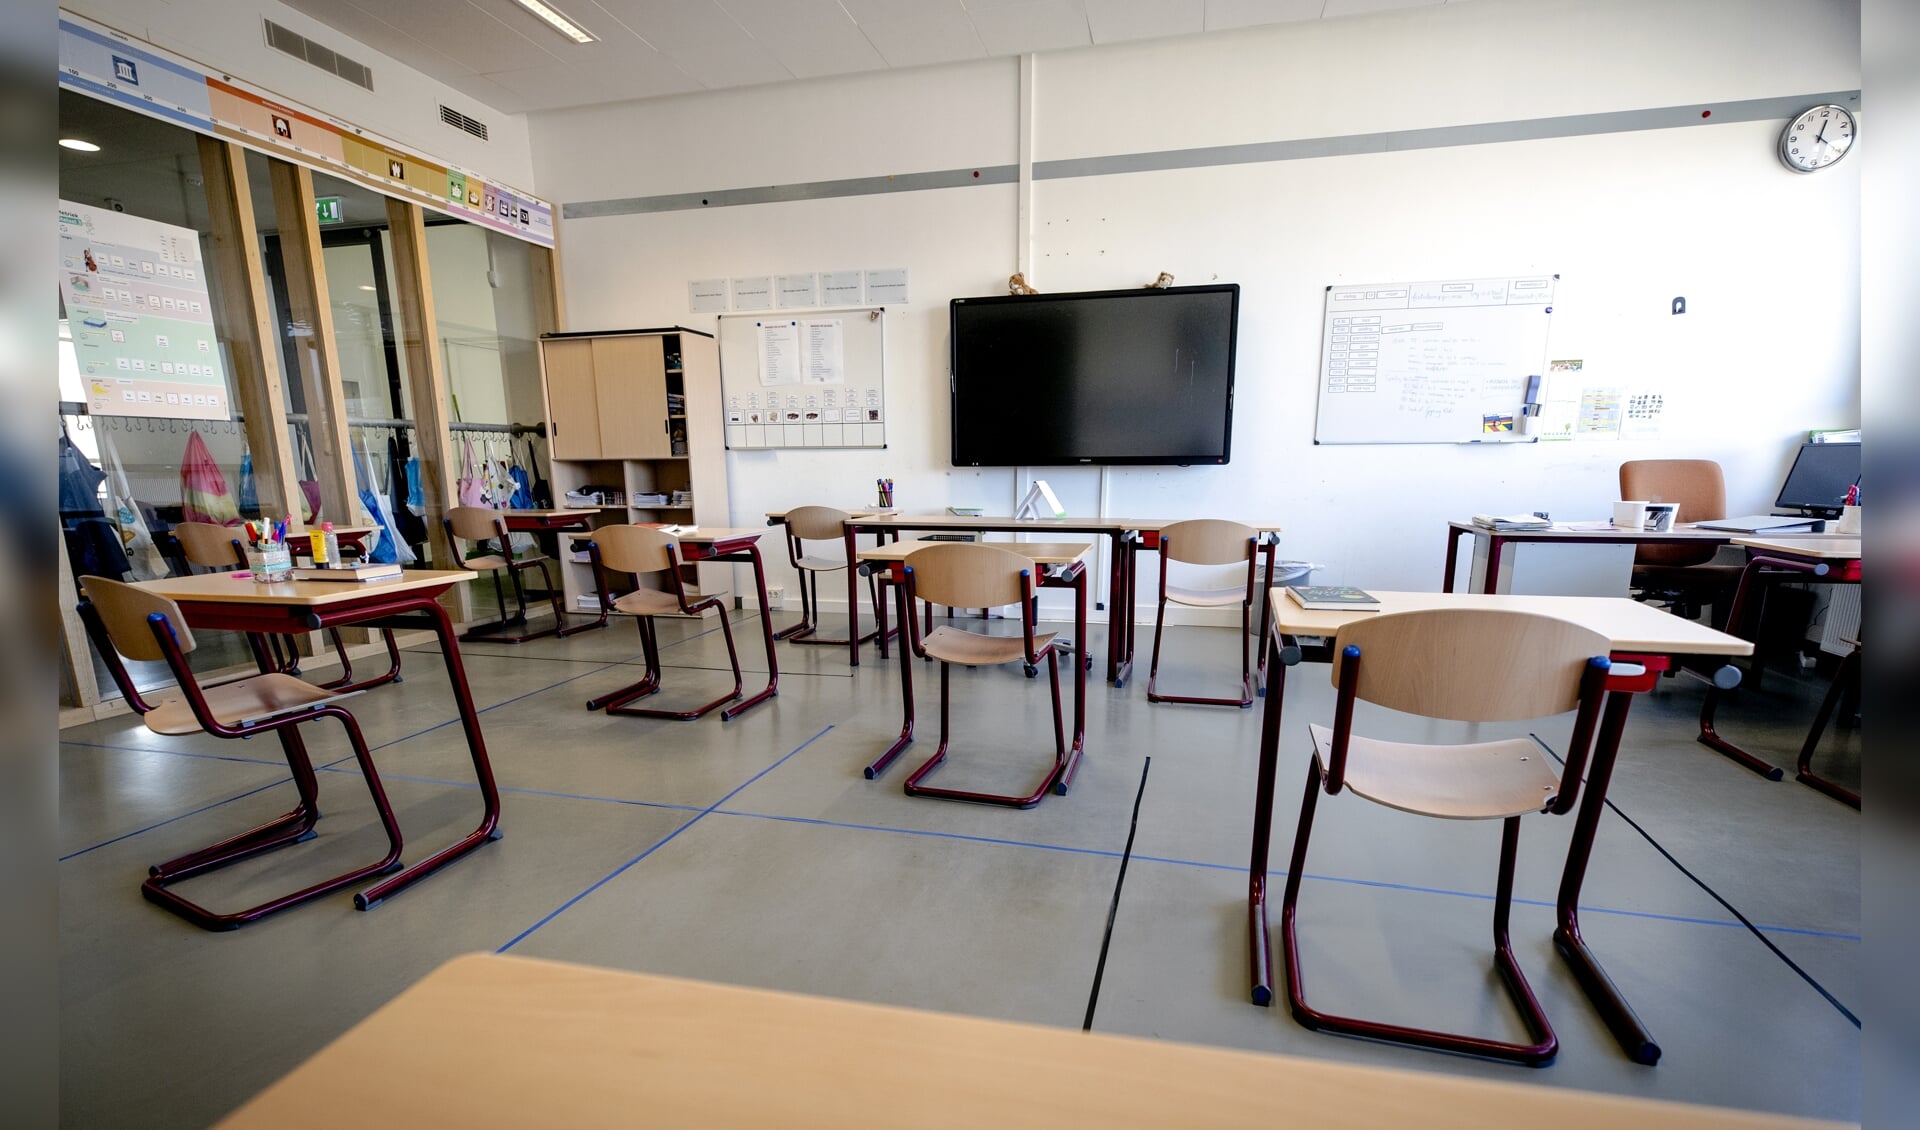 De tafels staan anderhalve meter uit elkaar in een klaslokaal van een basisschool. 